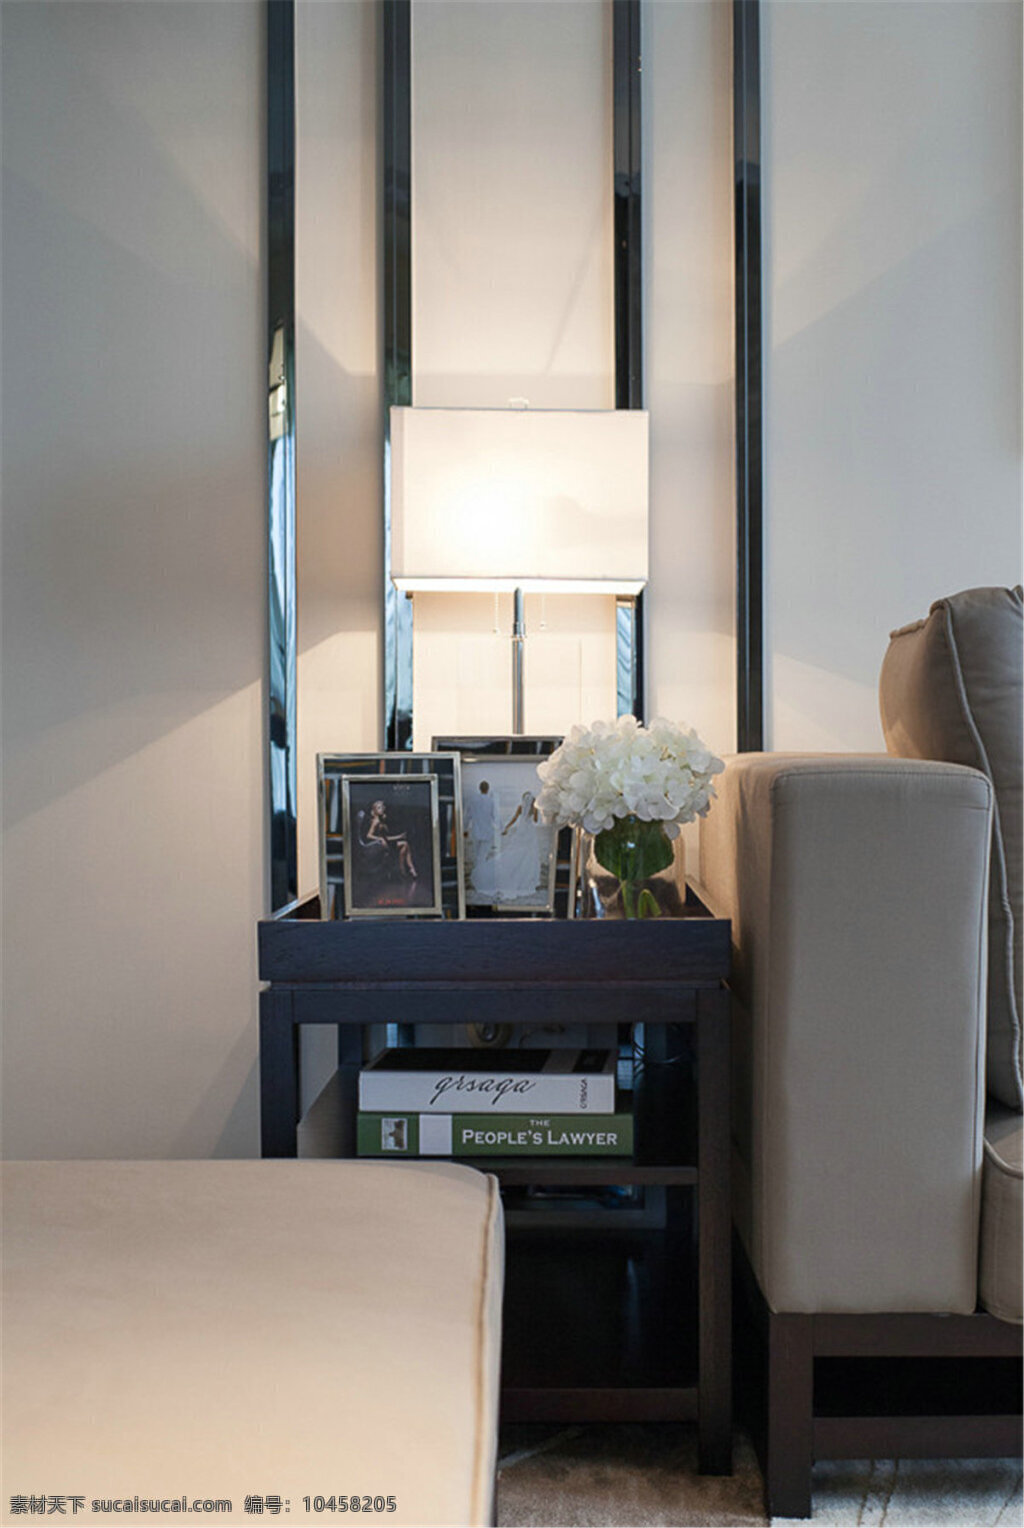 现代 时尚 客厅 白色 方块 吊灯 室内装修 效果图 客厅装修 黑色柜子 木地板 浅褐色沙发